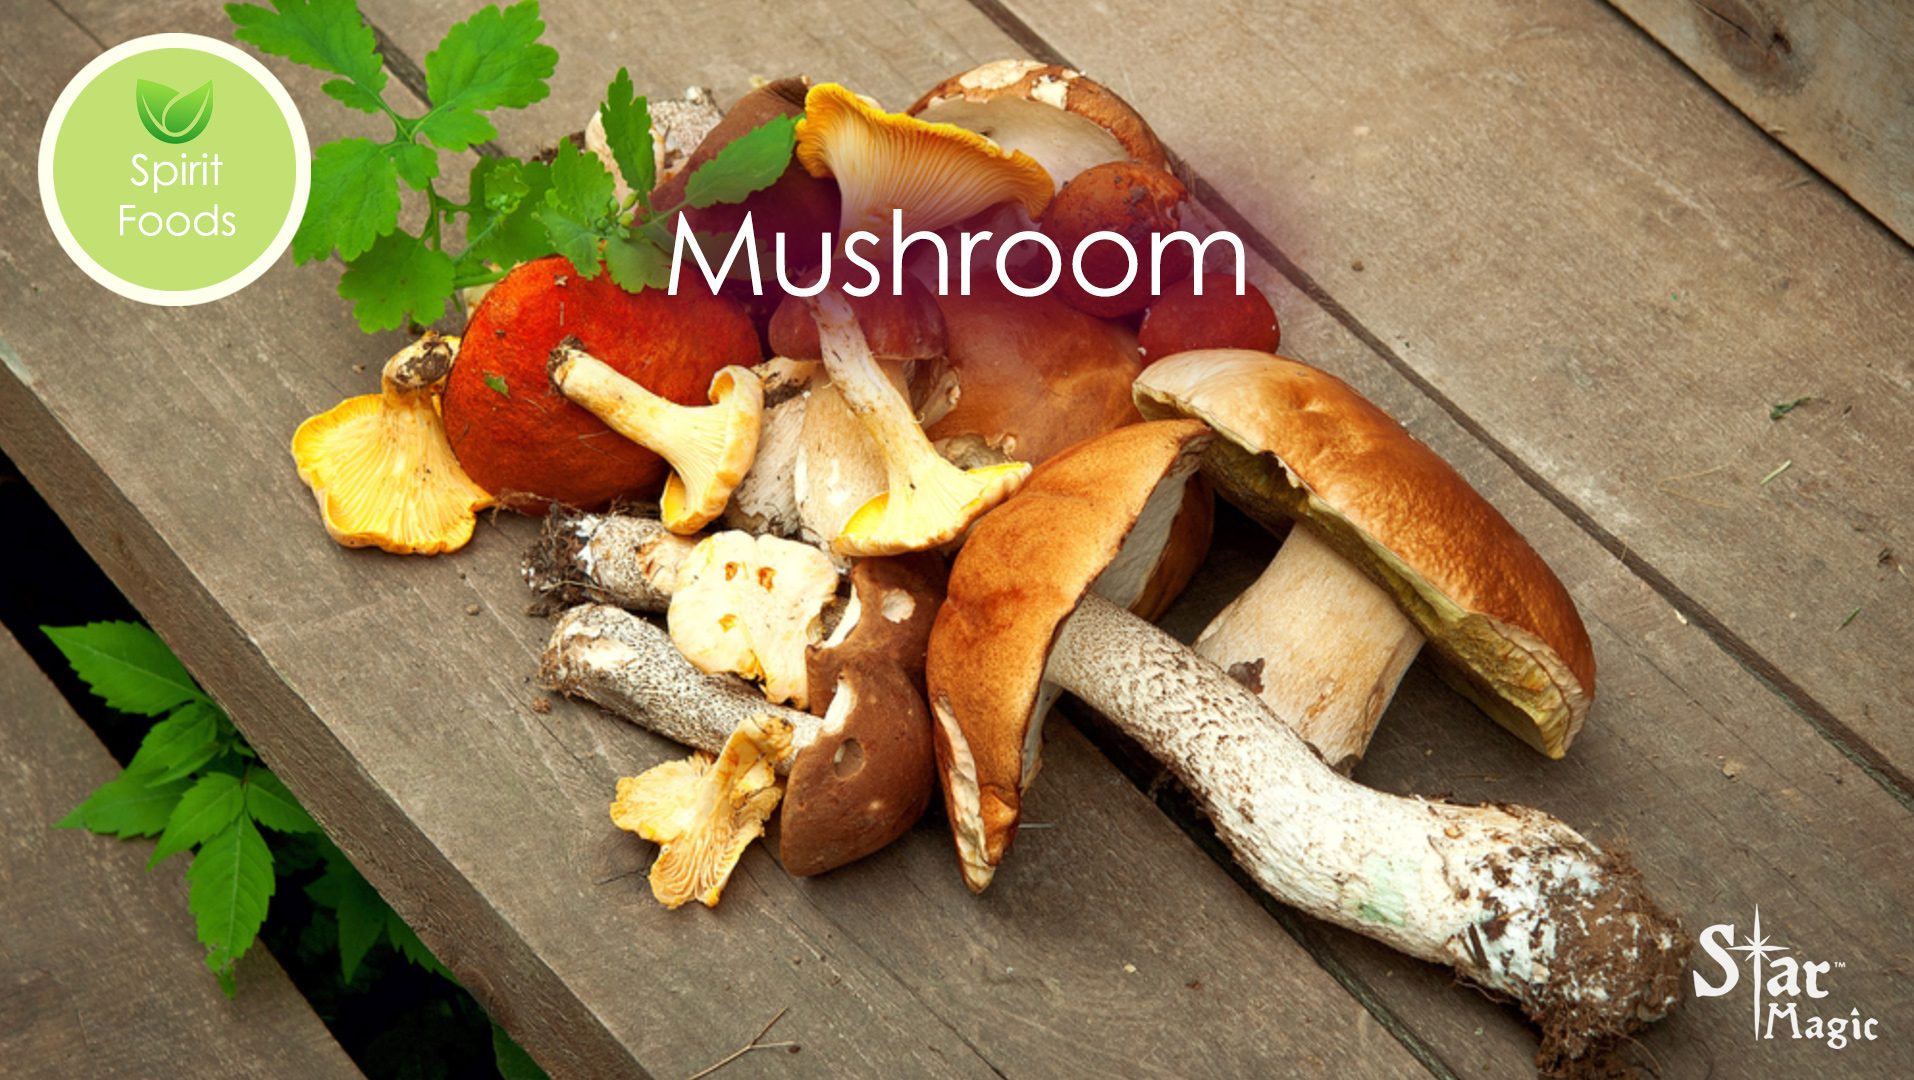 Spirit Food – Mushroom